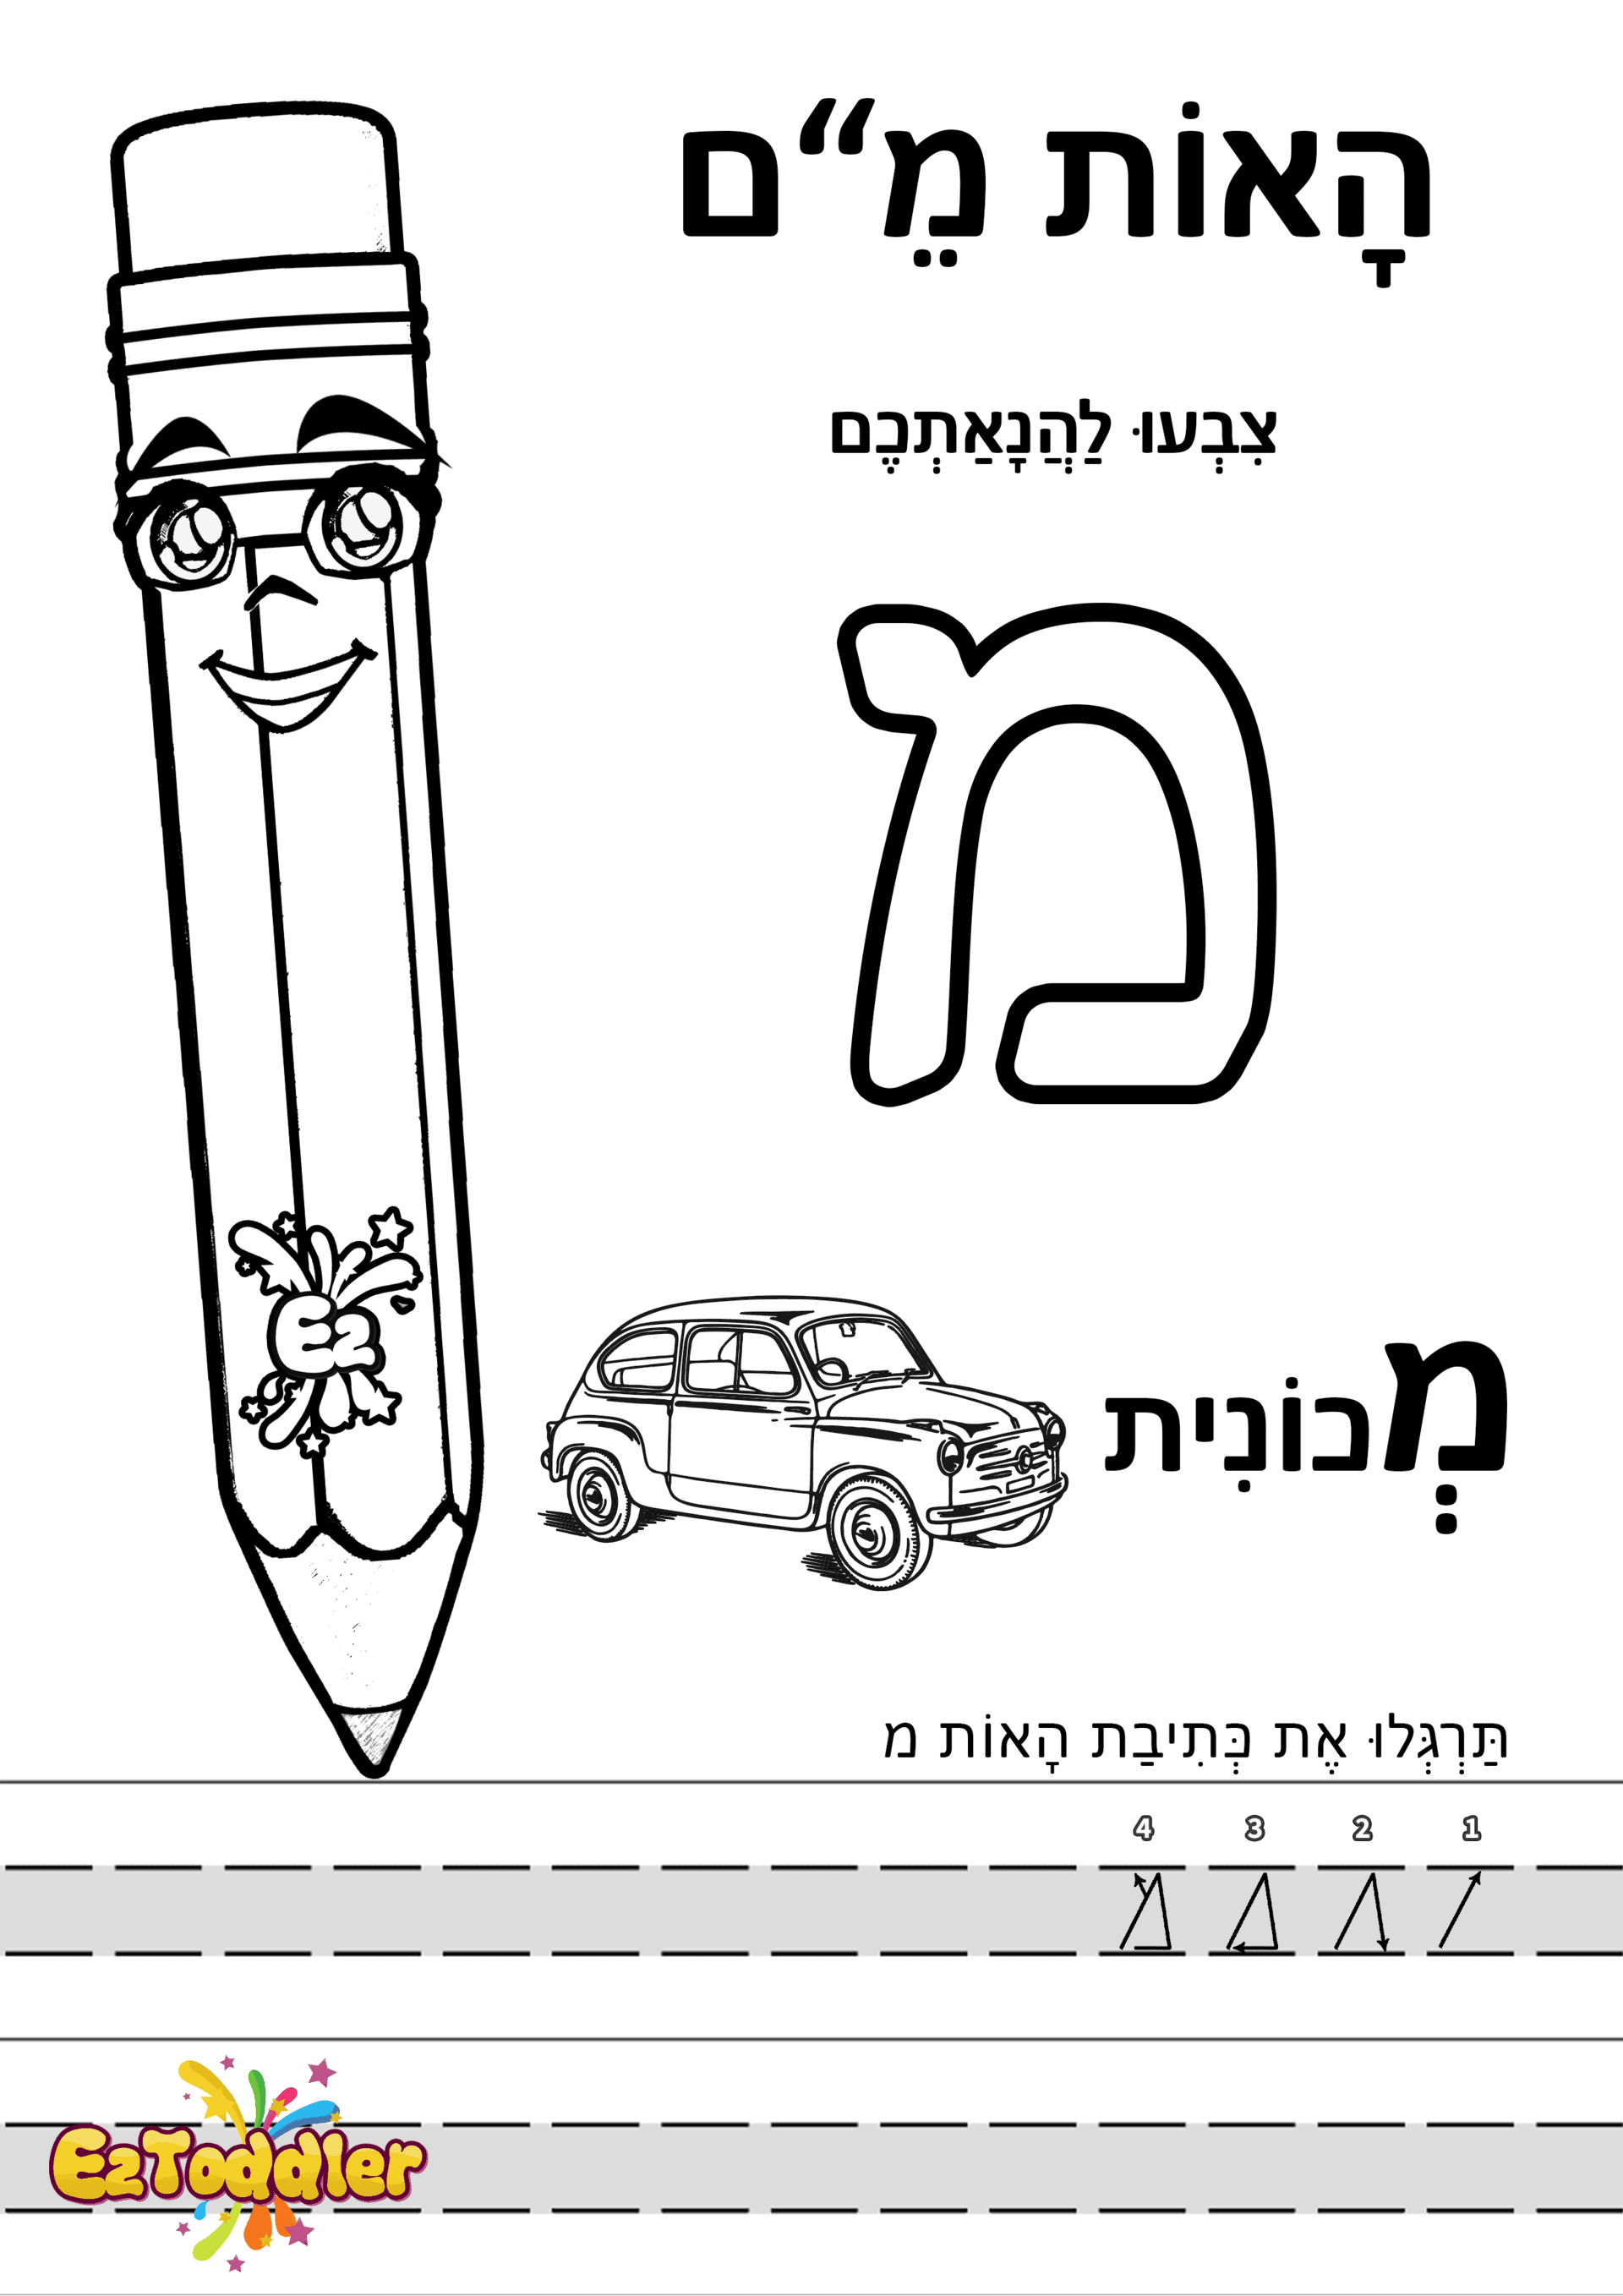 דפי עבודה האות מ בדפוס • דפי עבודה אותיות בעברית | EZToddler